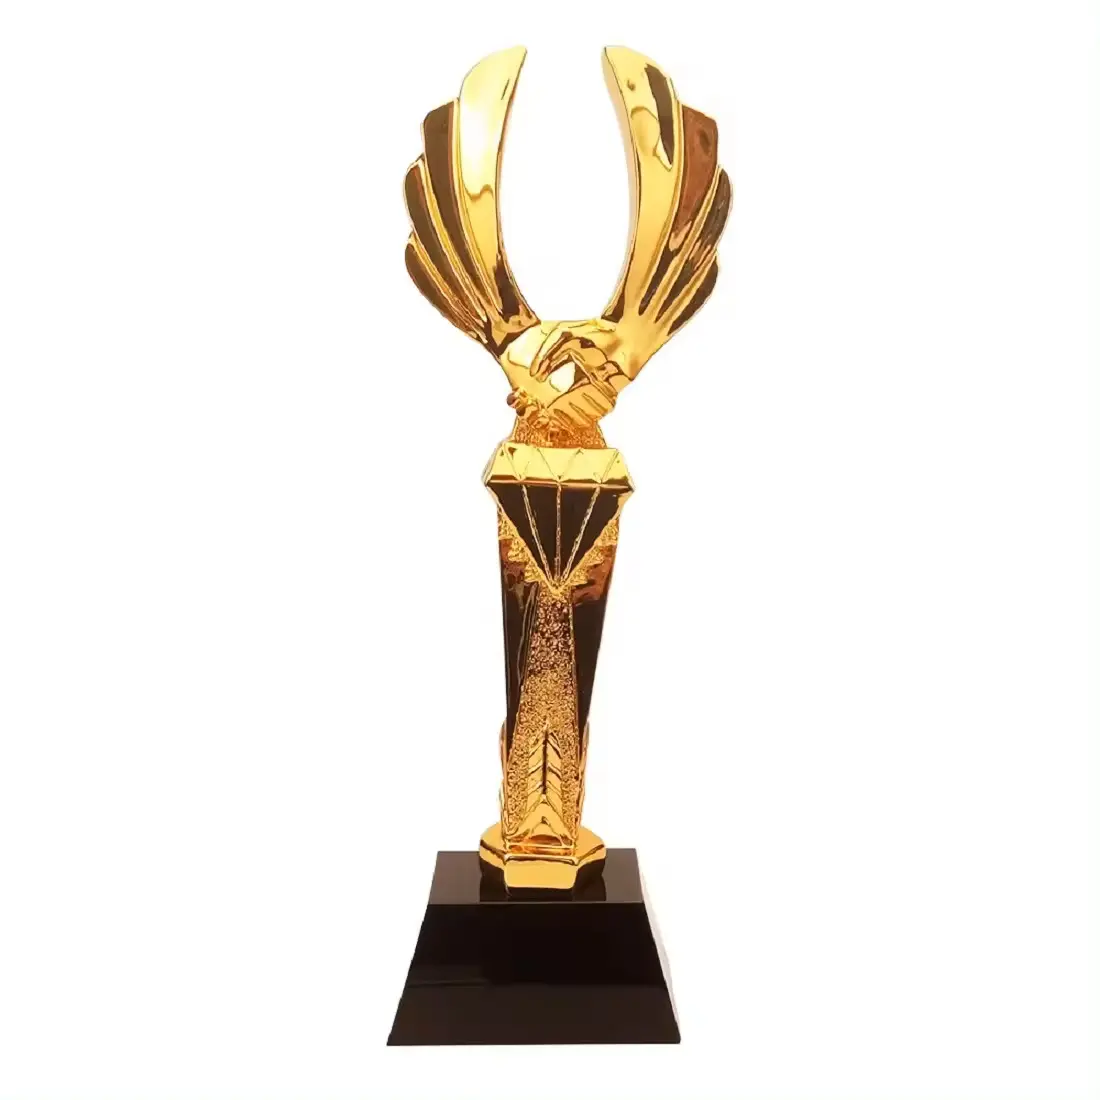 Металлический позолоченный Большой пустой трофей для танцев и гравированные трофеи, Самые продаваемые прочные награды Oscar по оптовой цене